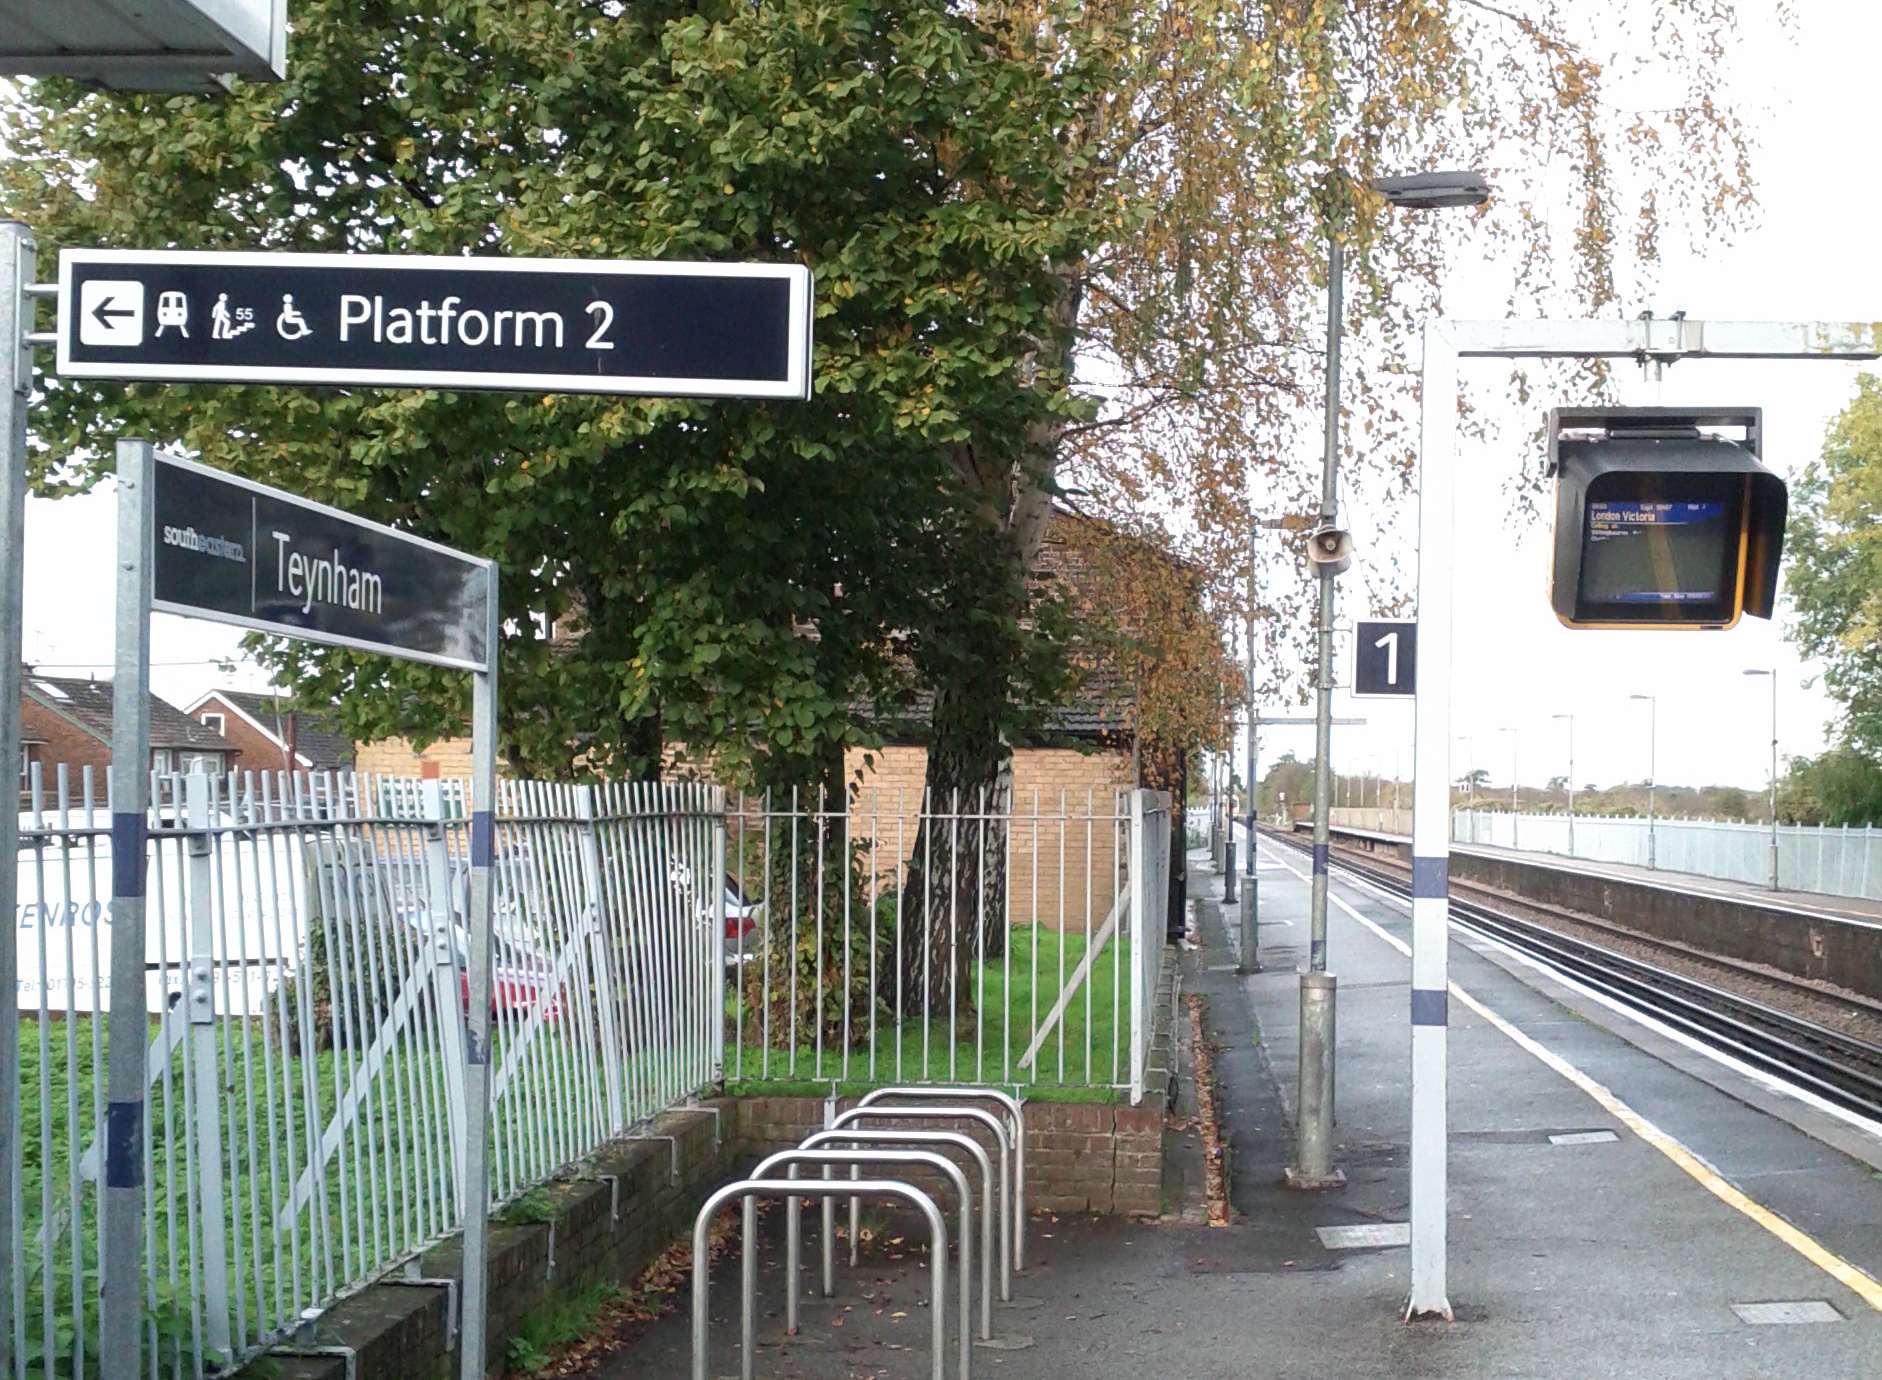 The platform at Teynham station